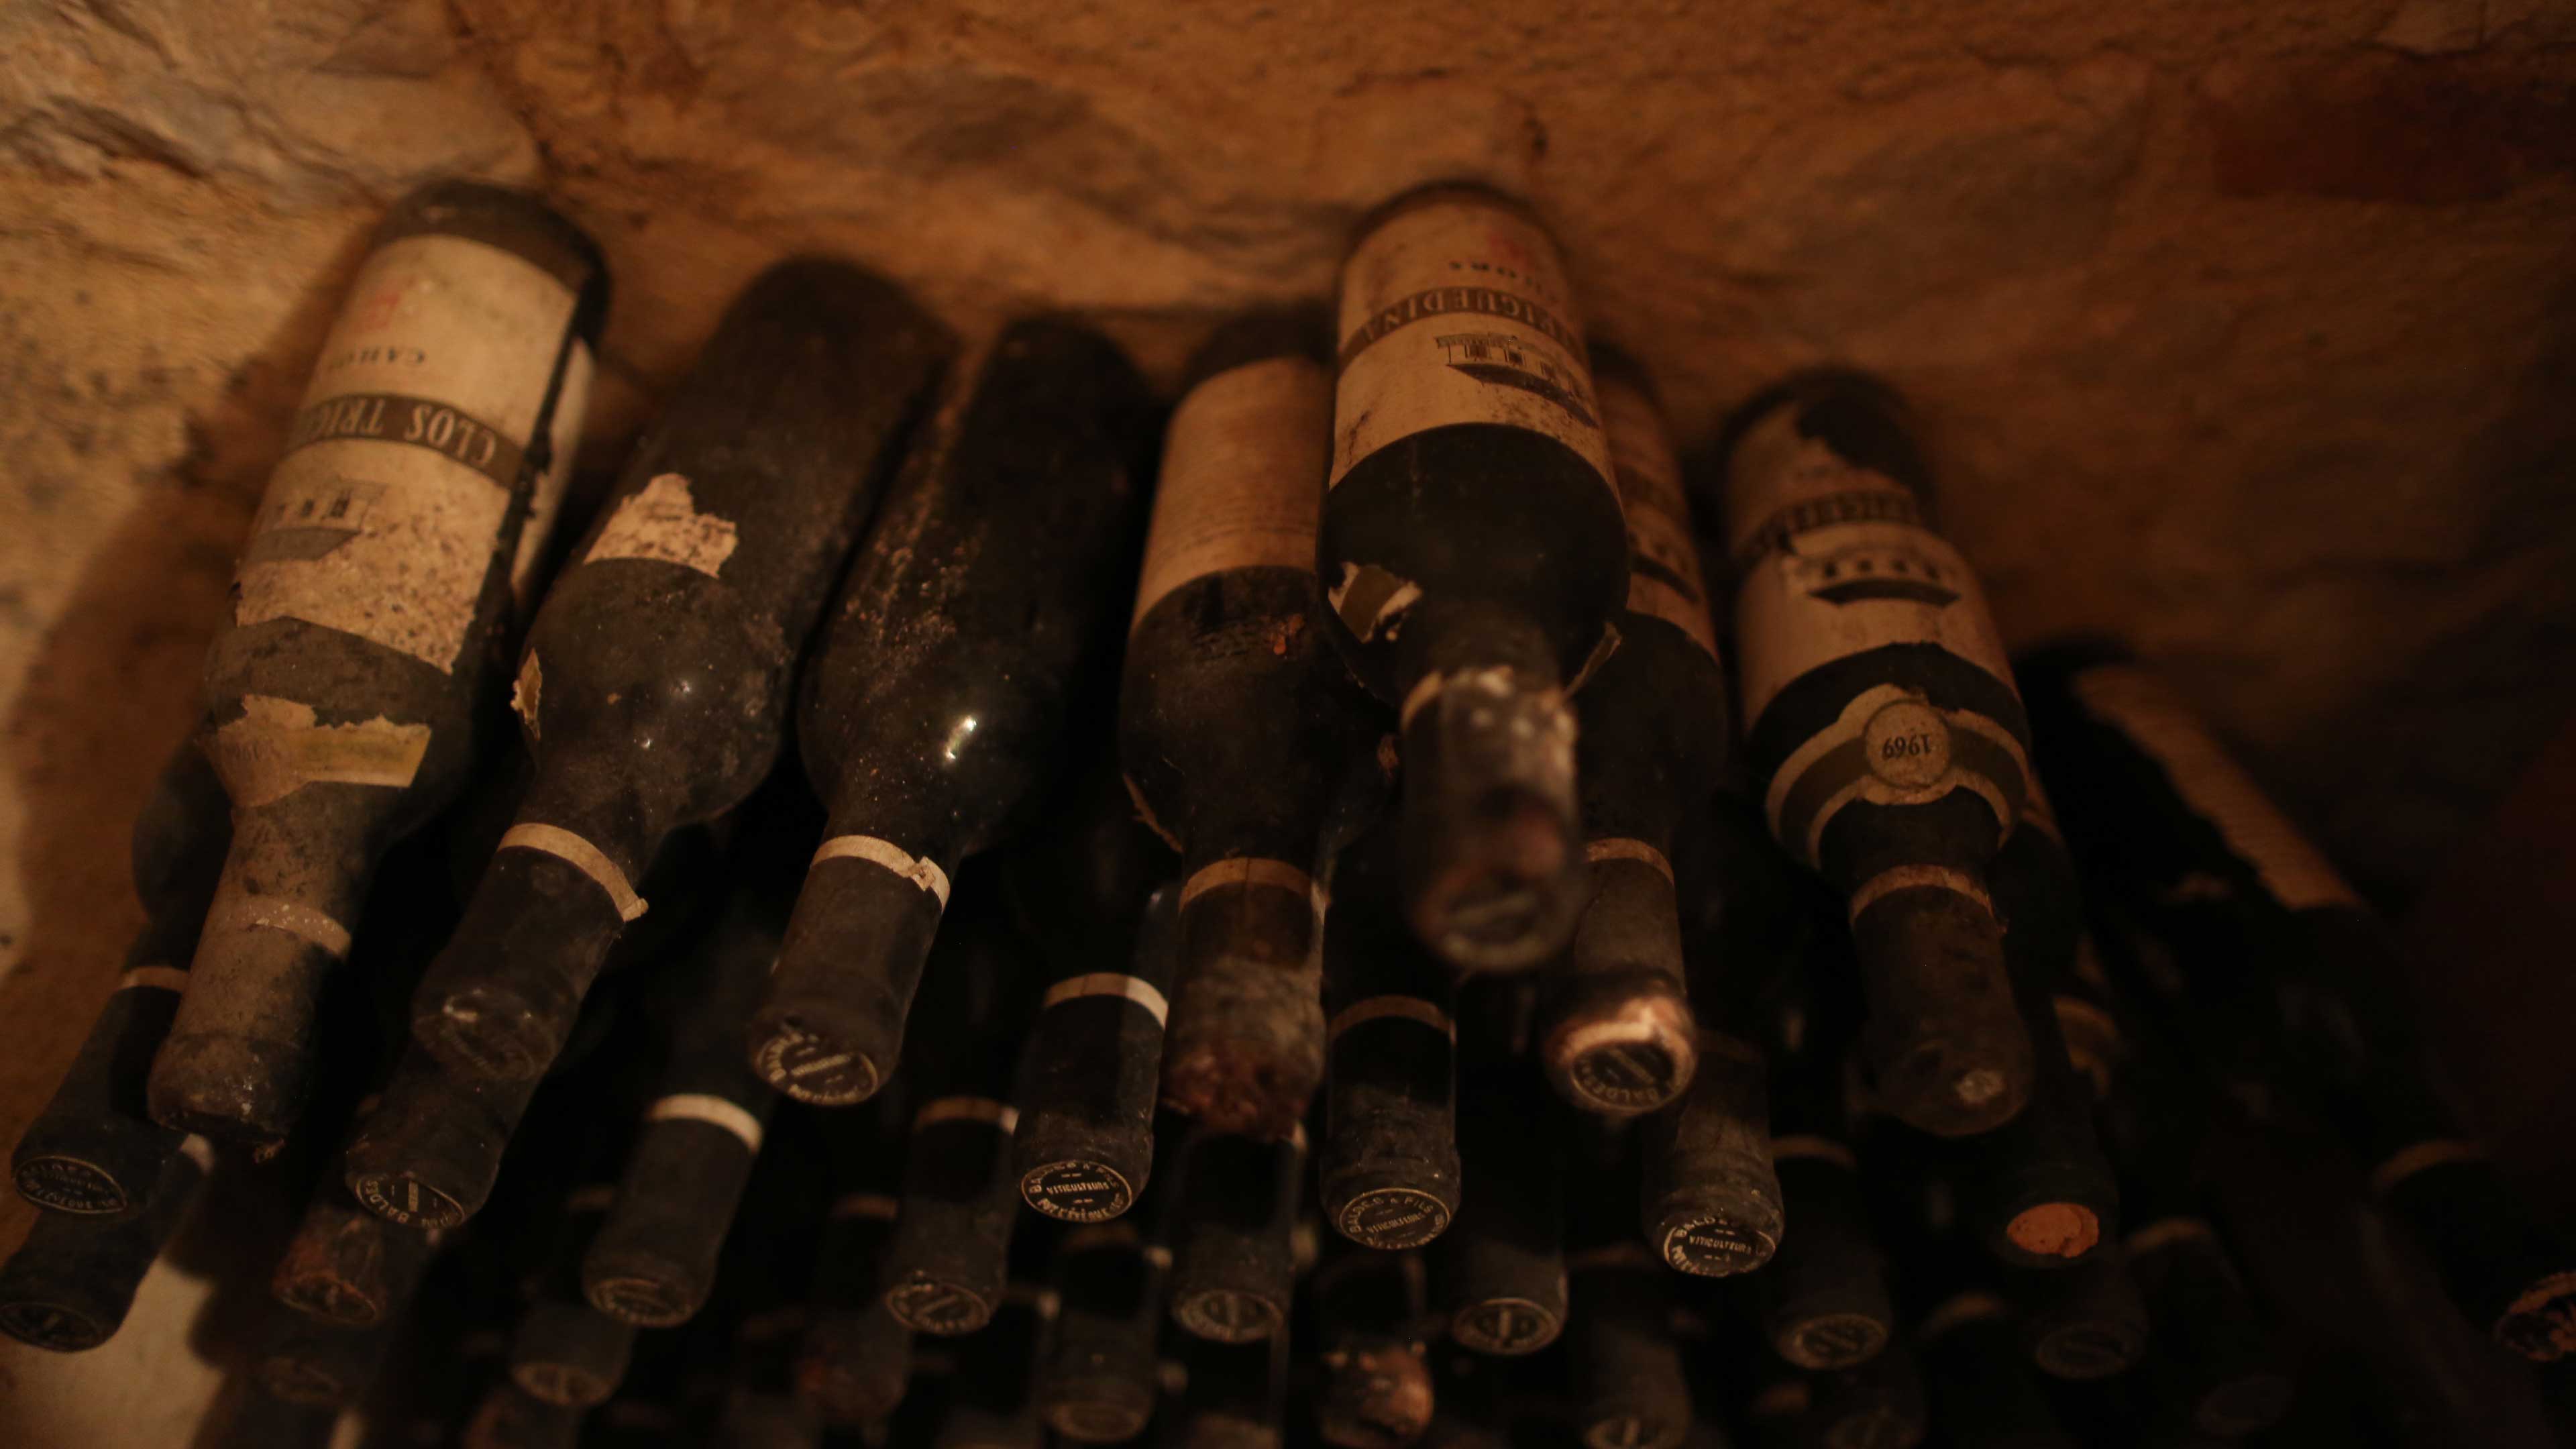 典故があり年を重ねられているヴィンテージワインしばしばより貴重です。